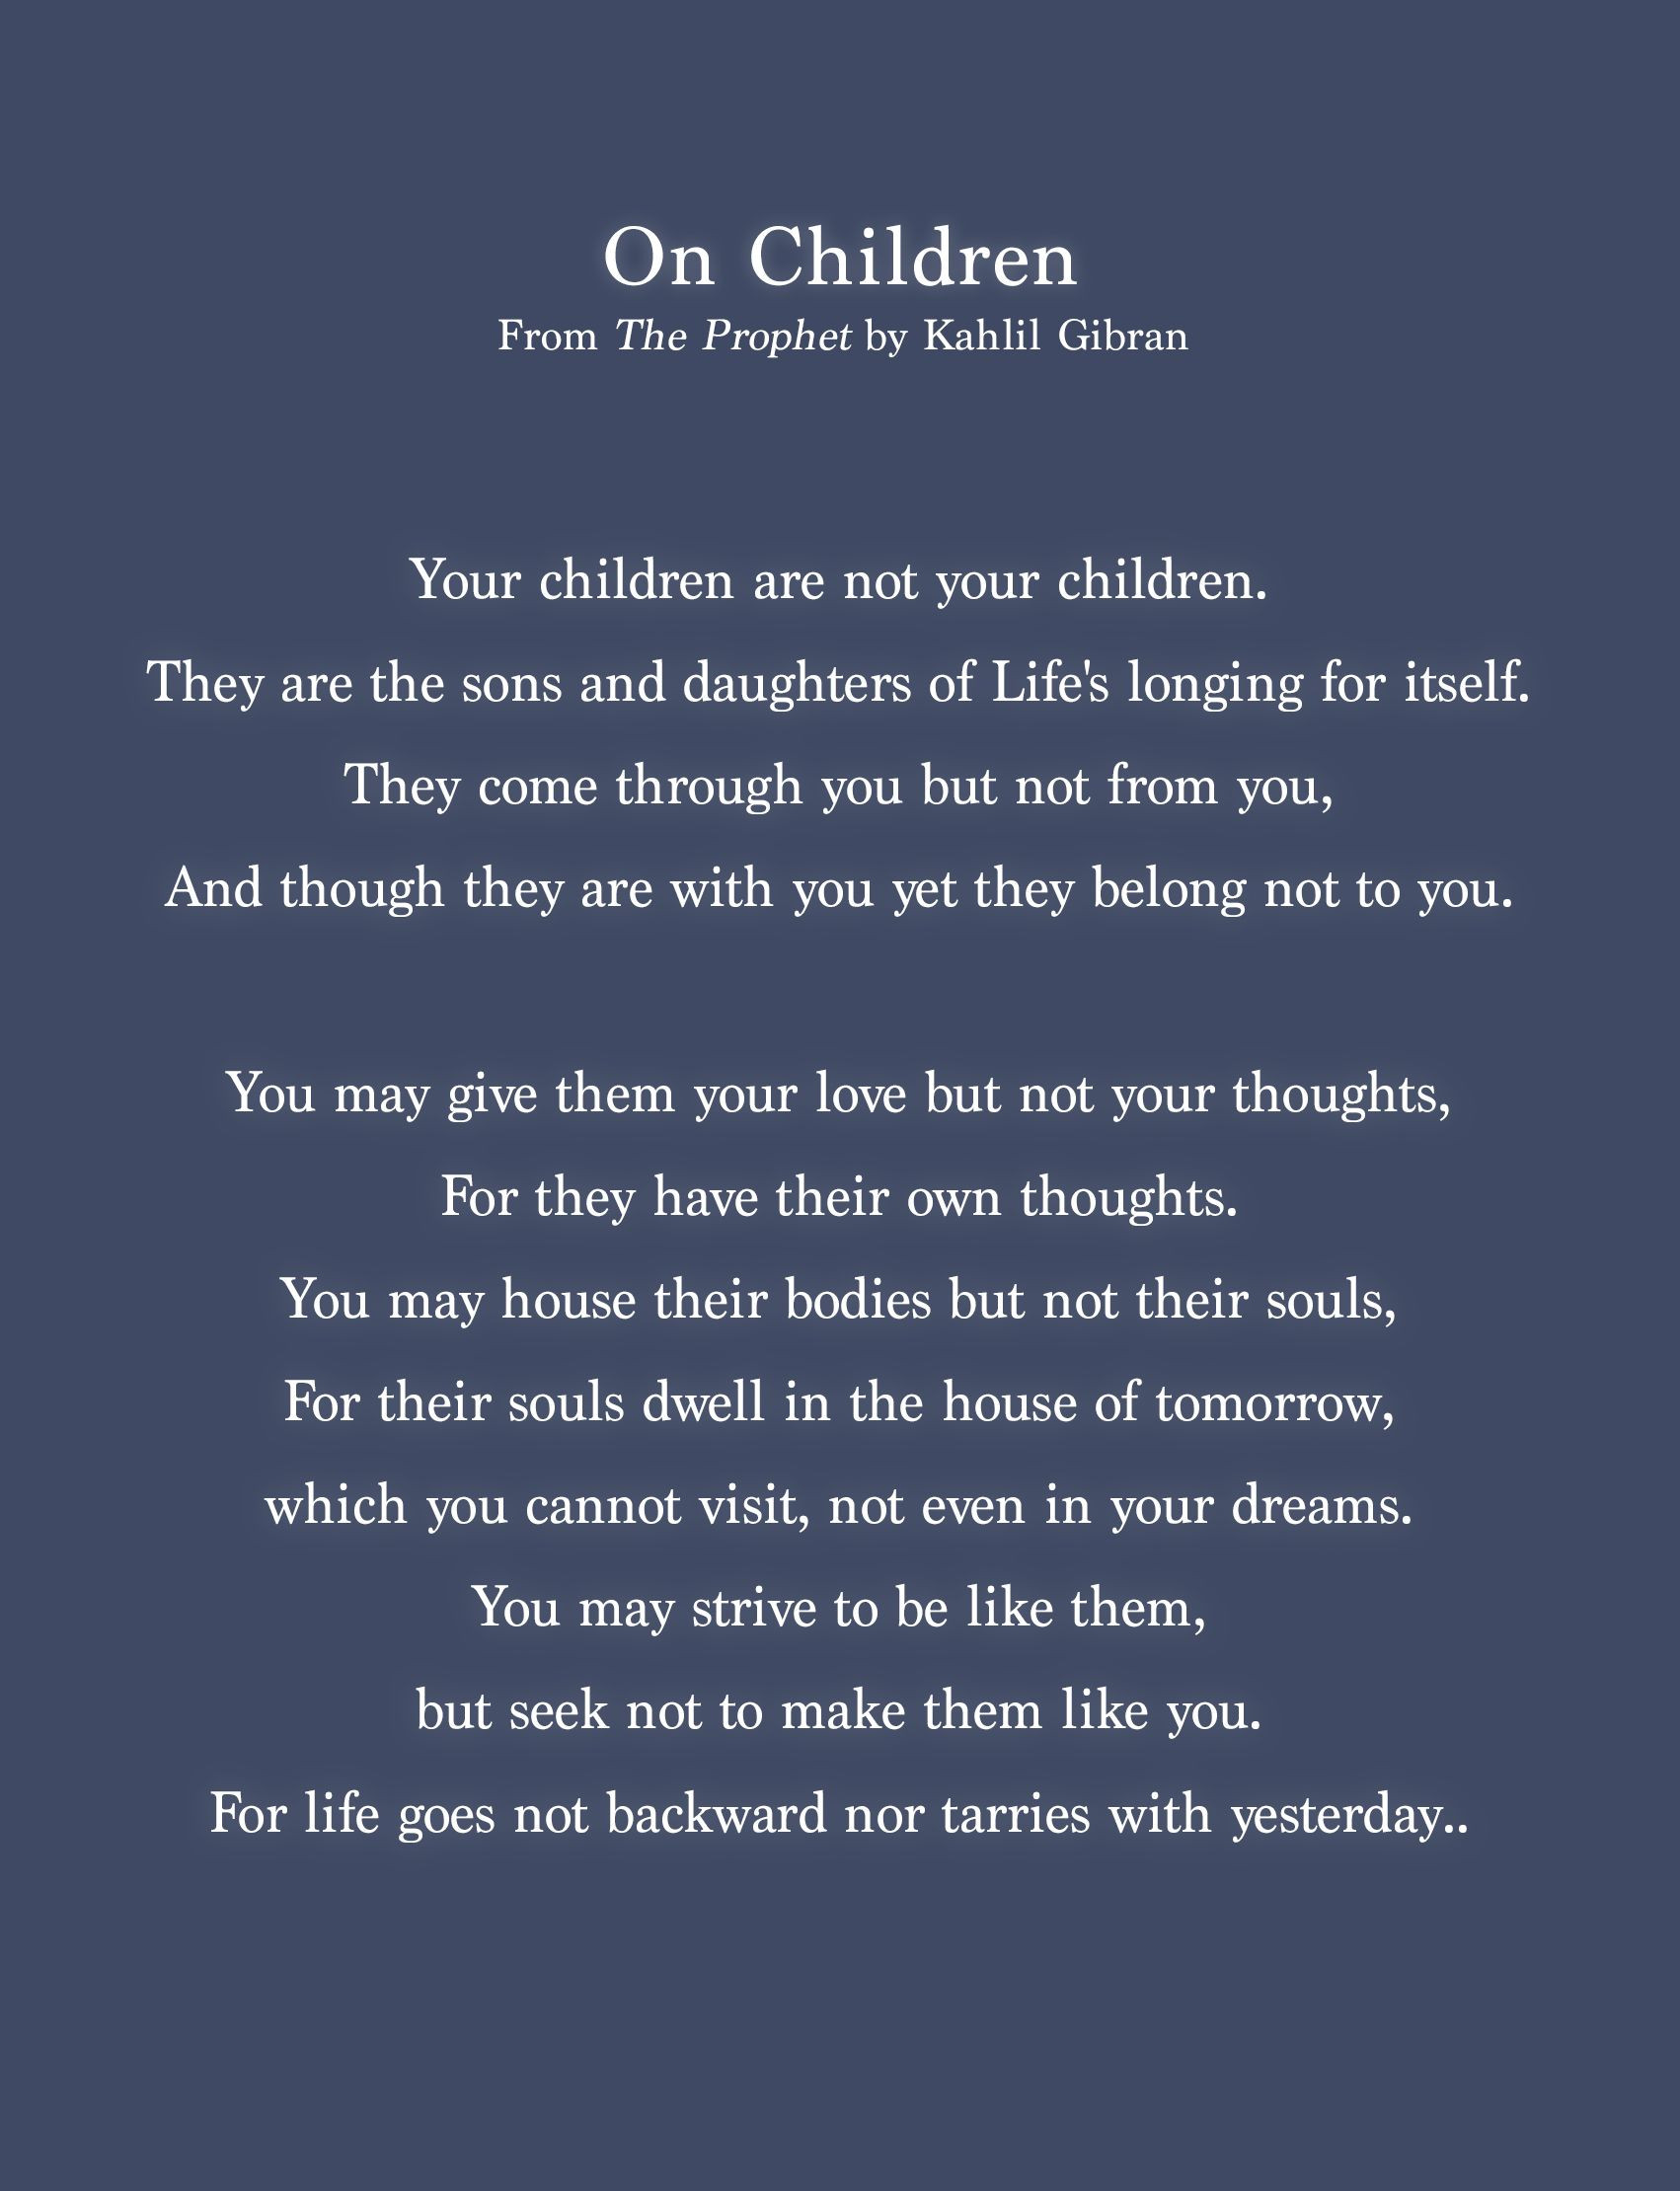 Khalil Gibran Quote On Children
 " Children" excerpt